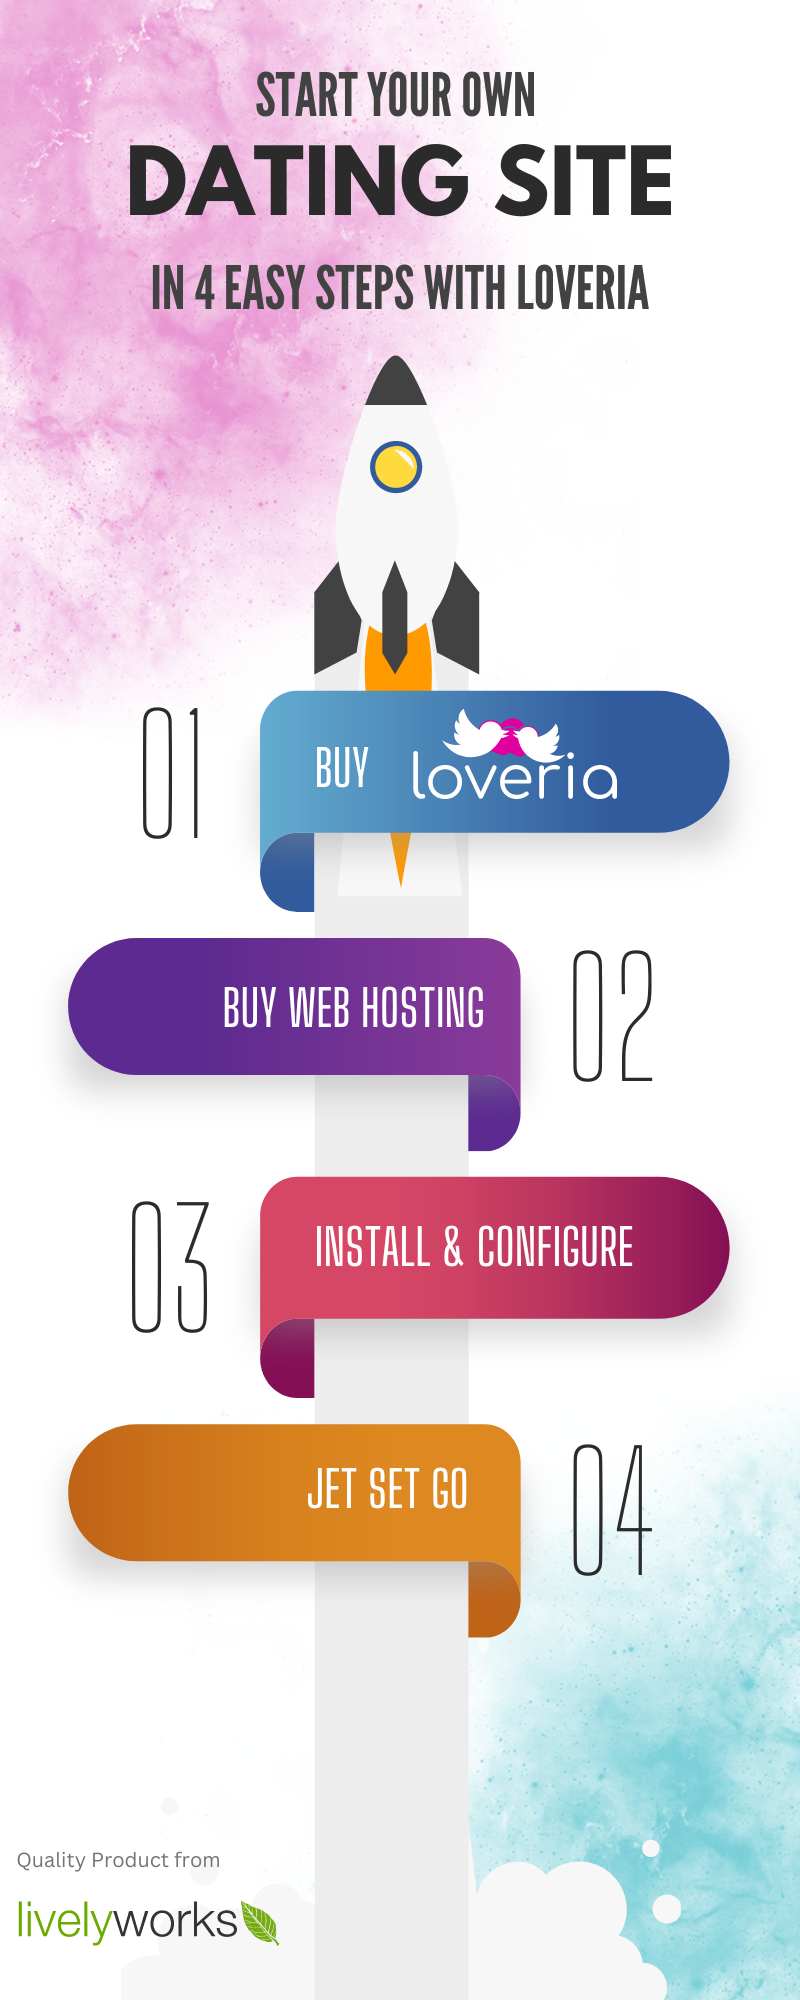 Loveria Features